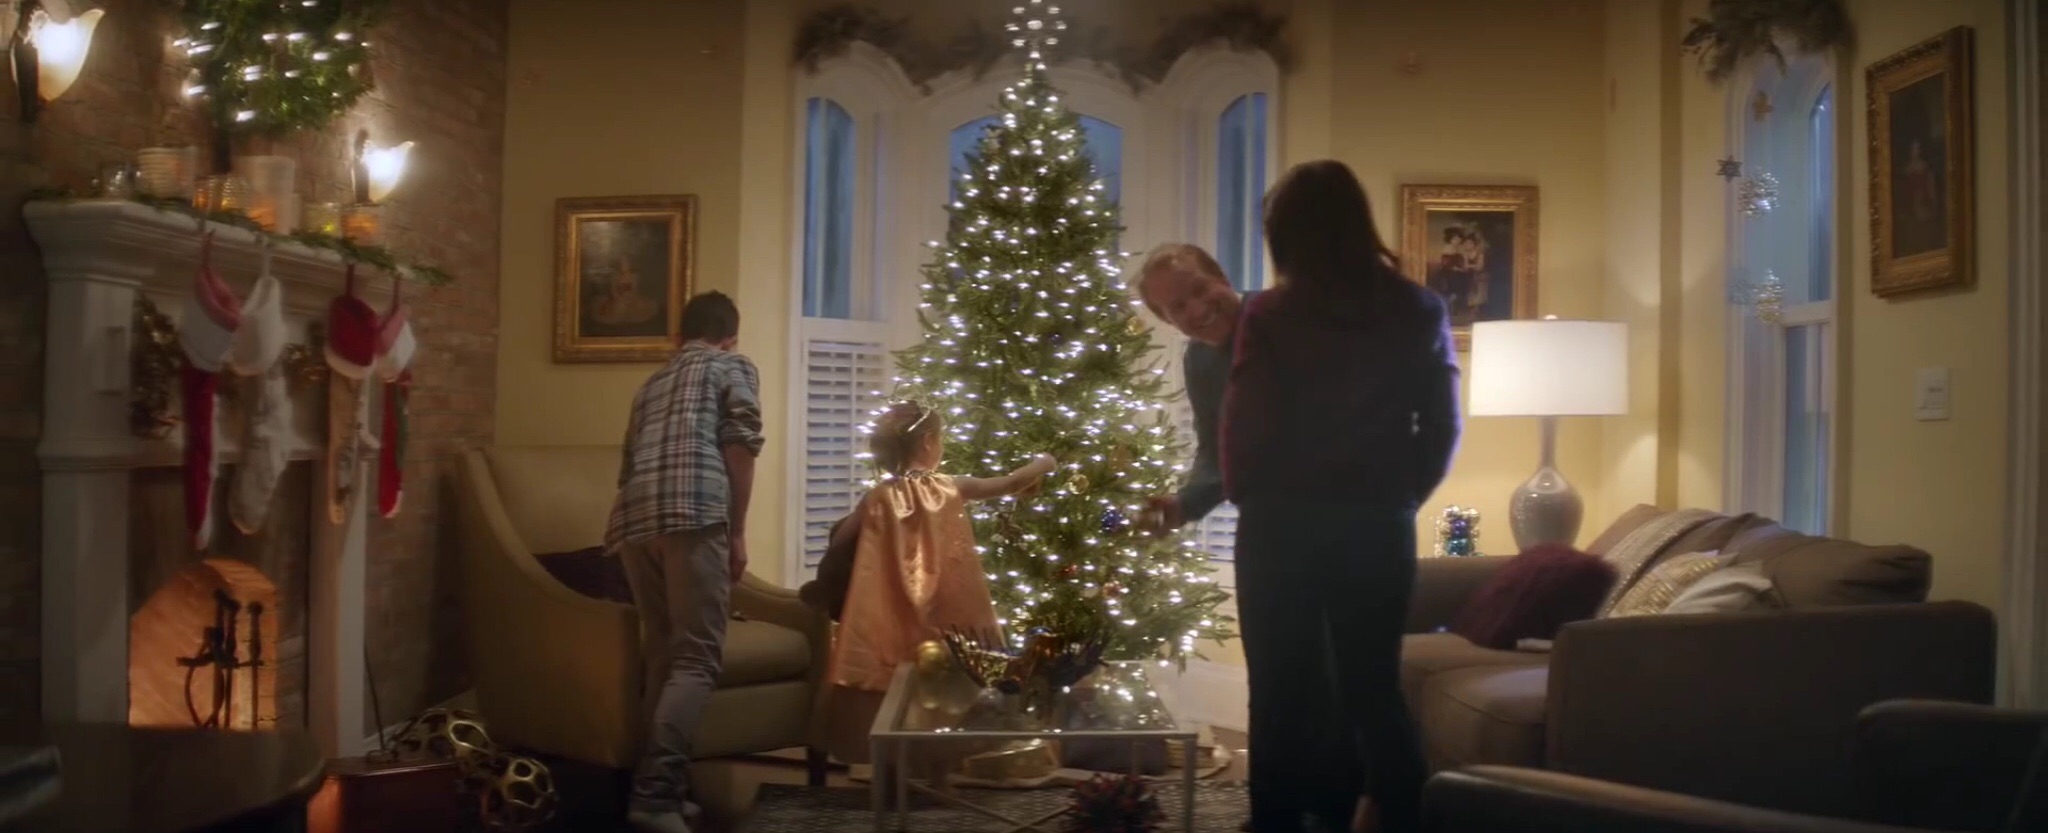 TV commercial - Telus Canada - Dec. 2014